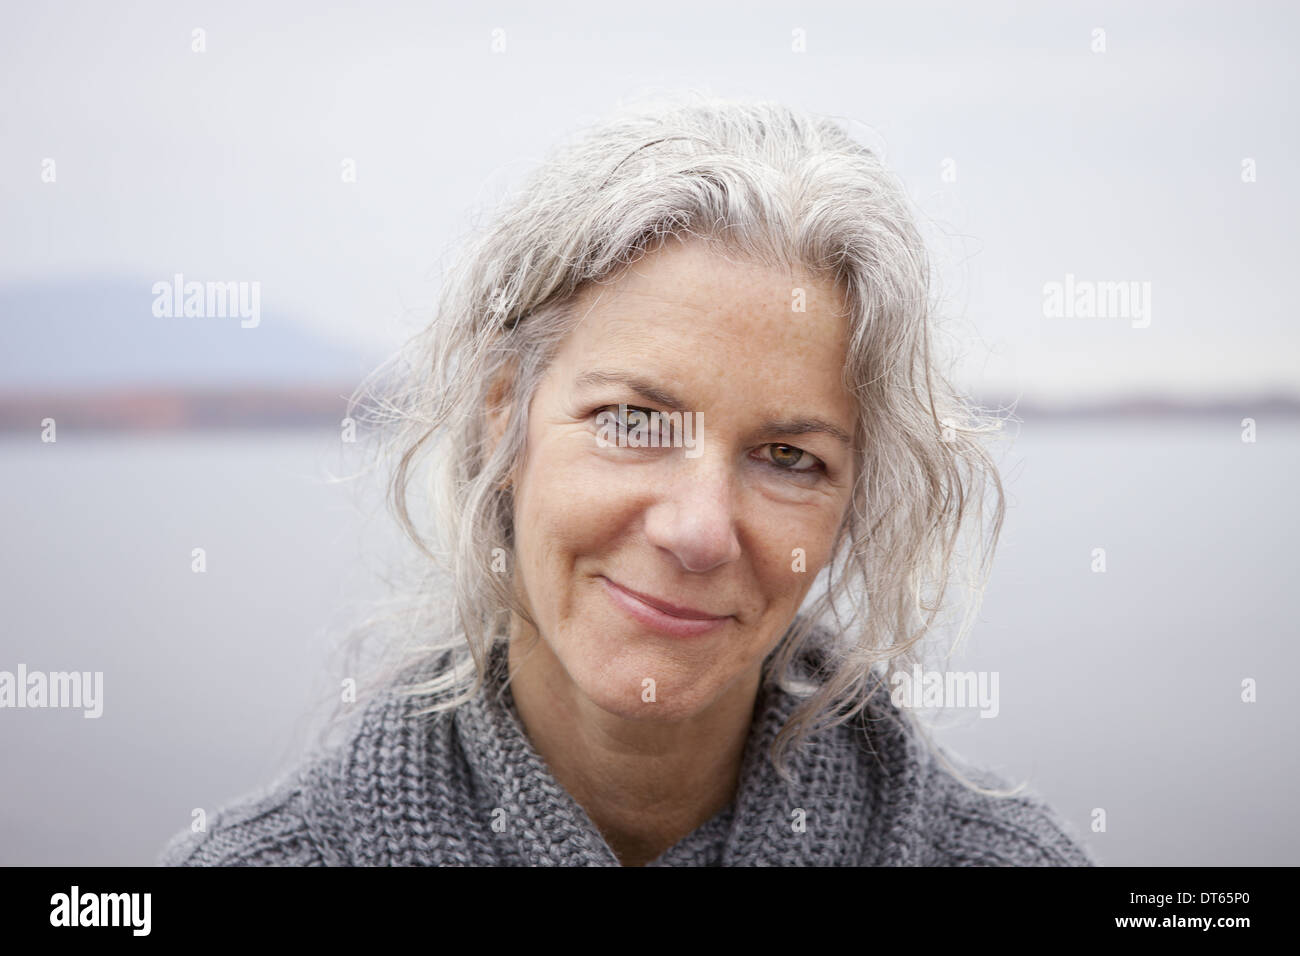 Une femme regardant la caméra, par le bord d'un lac. Banque D'Images